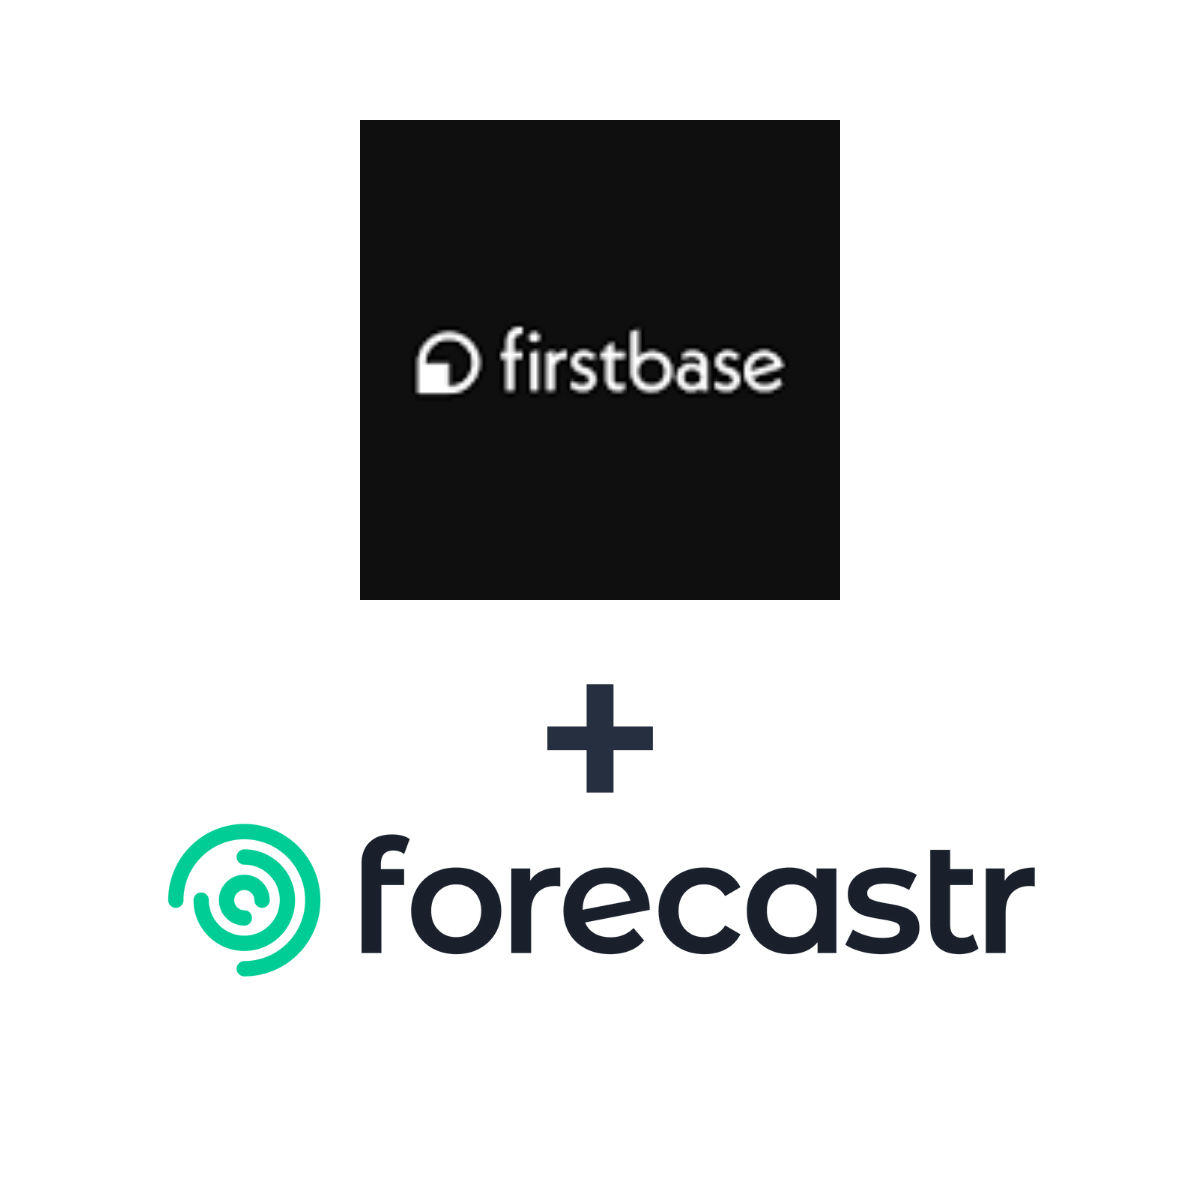 Partnership logos: Forecastr + Firstbase